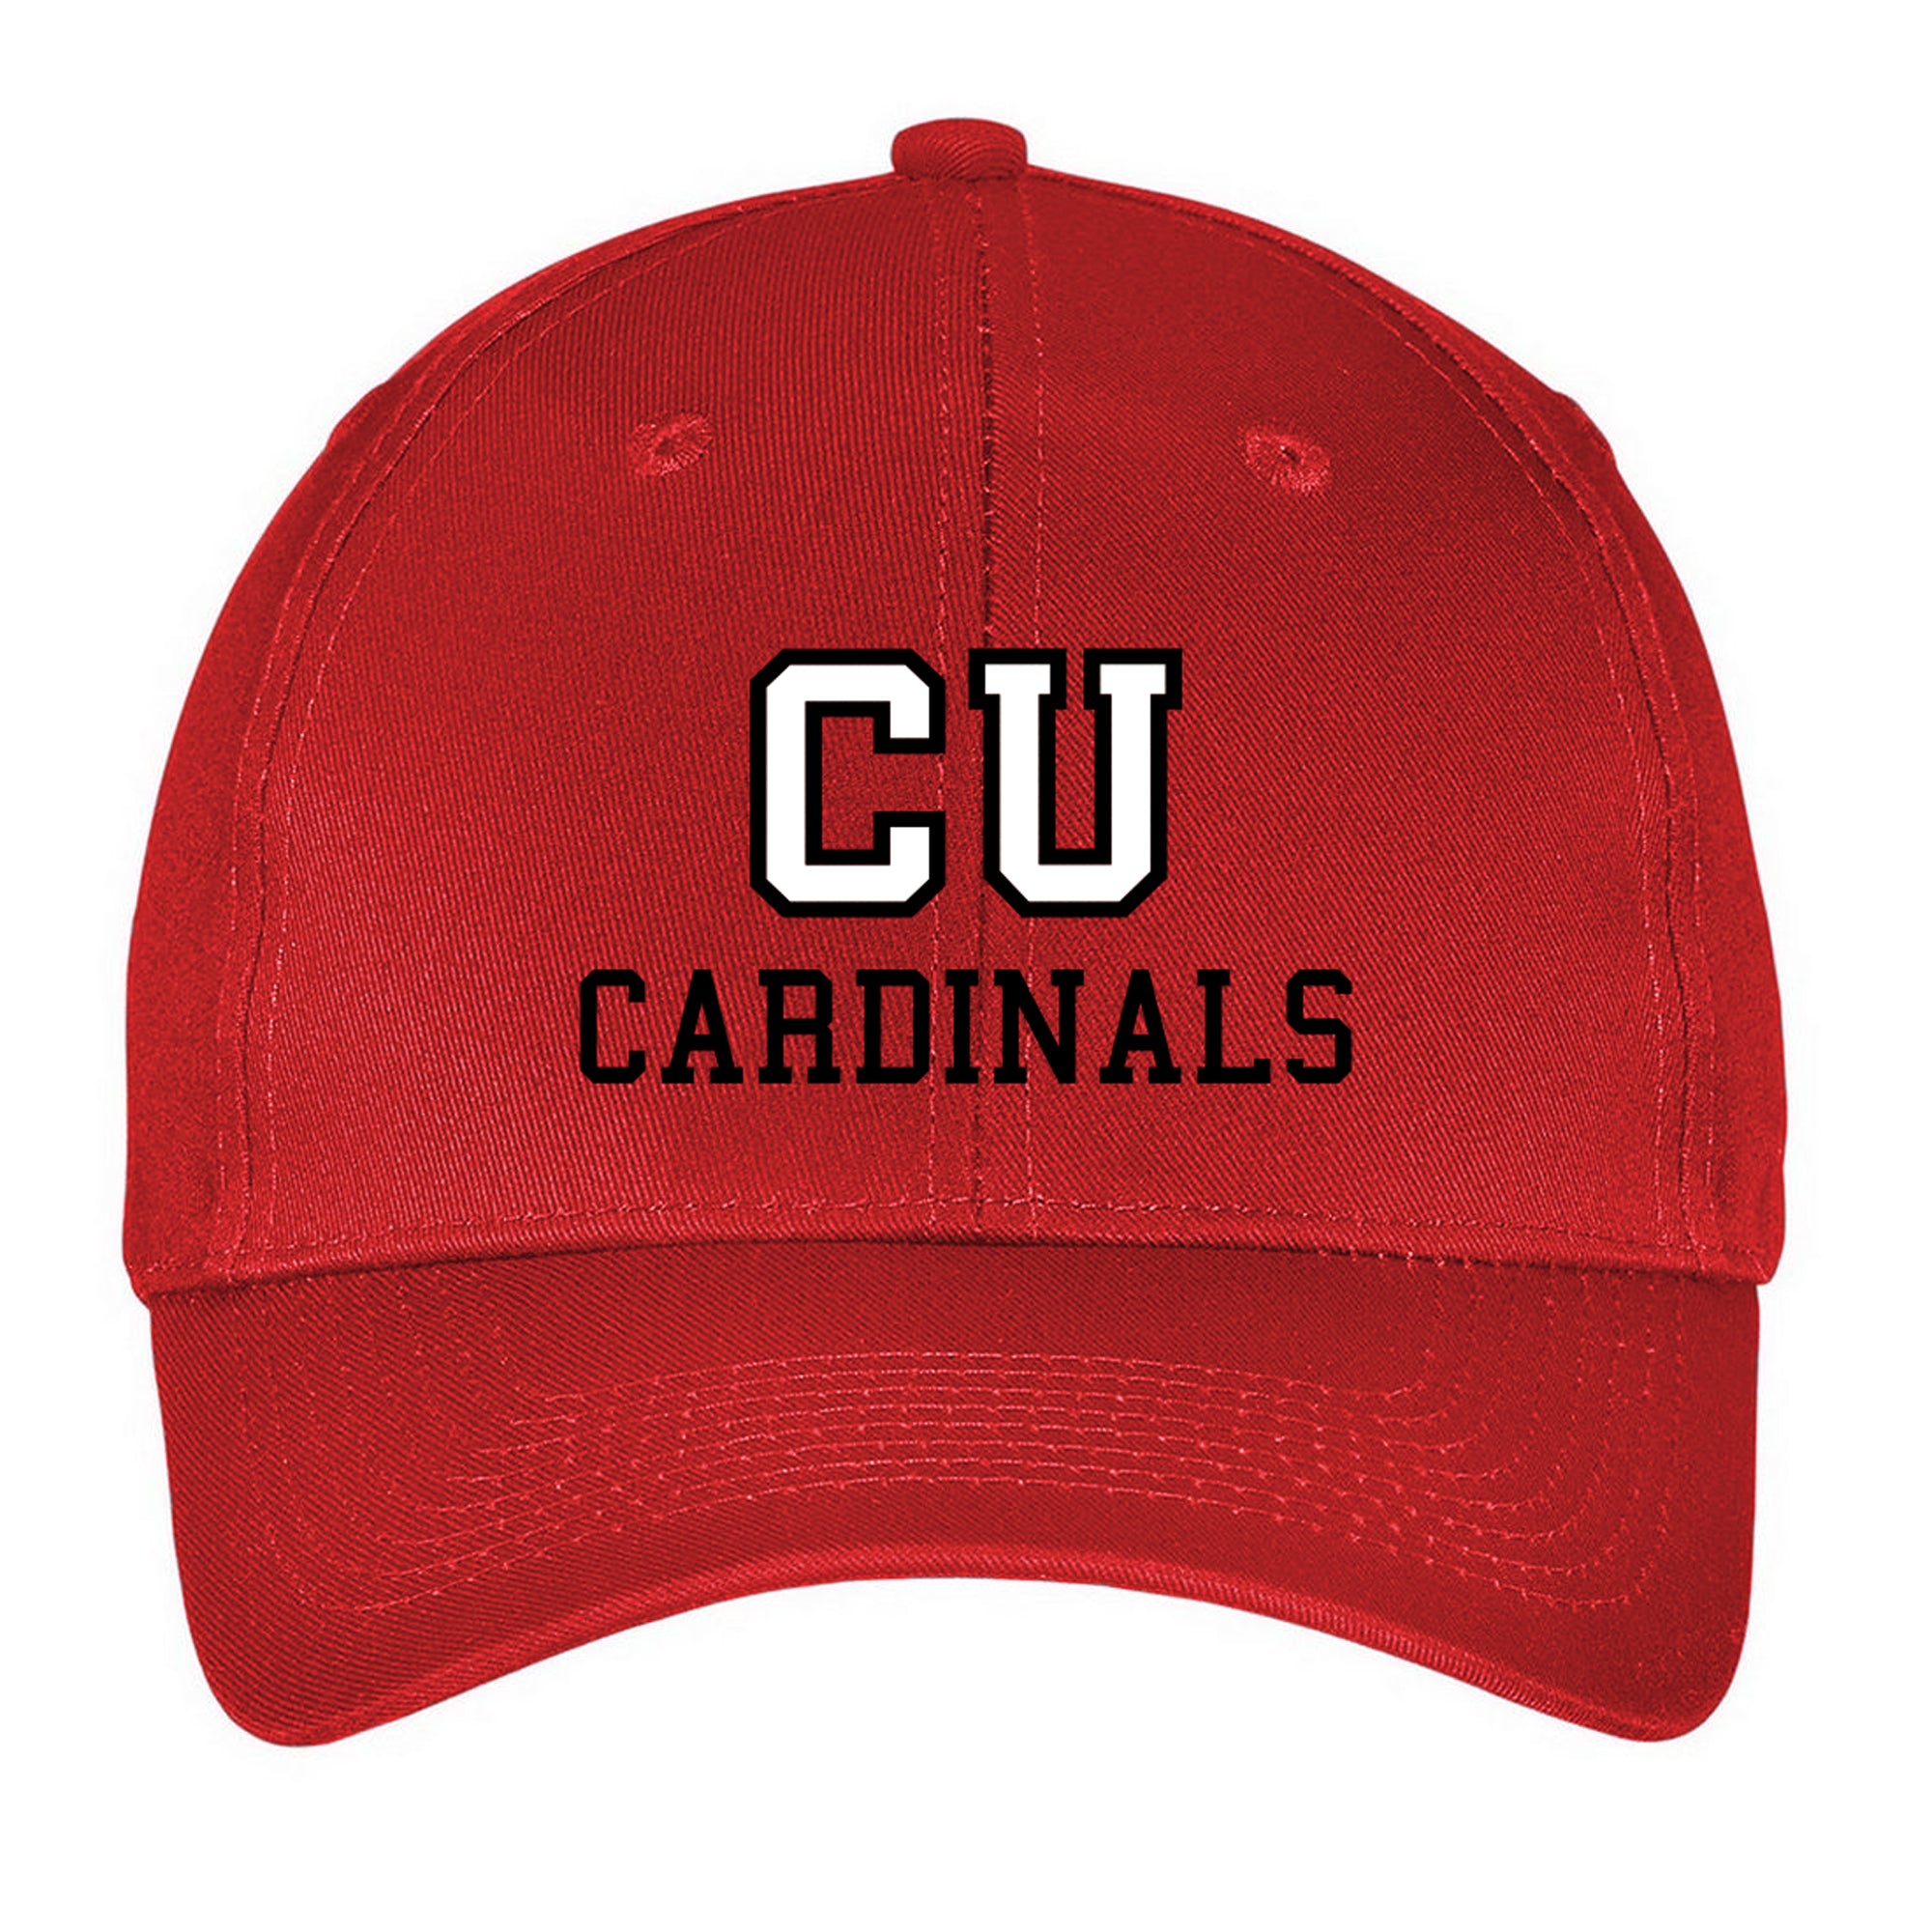 CU Cardinals Hat - Red